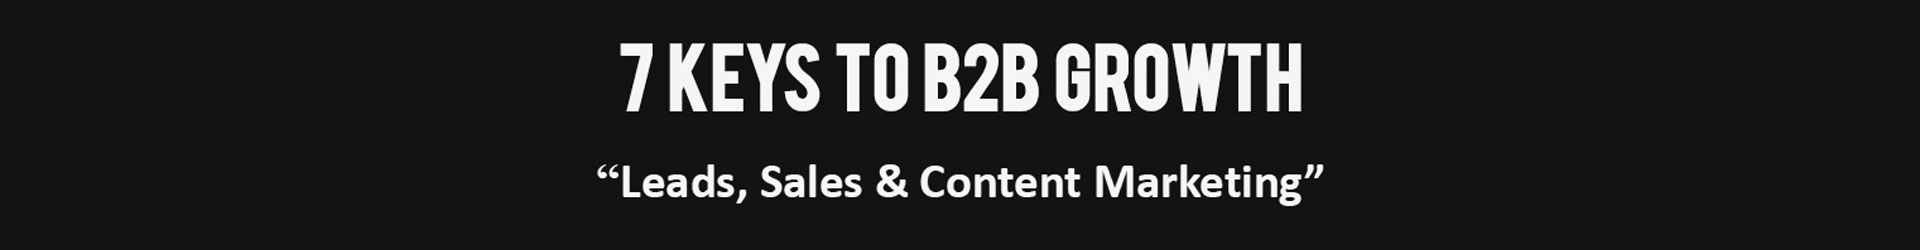 7 Keys for B2B Growth using B2B Content Marketing